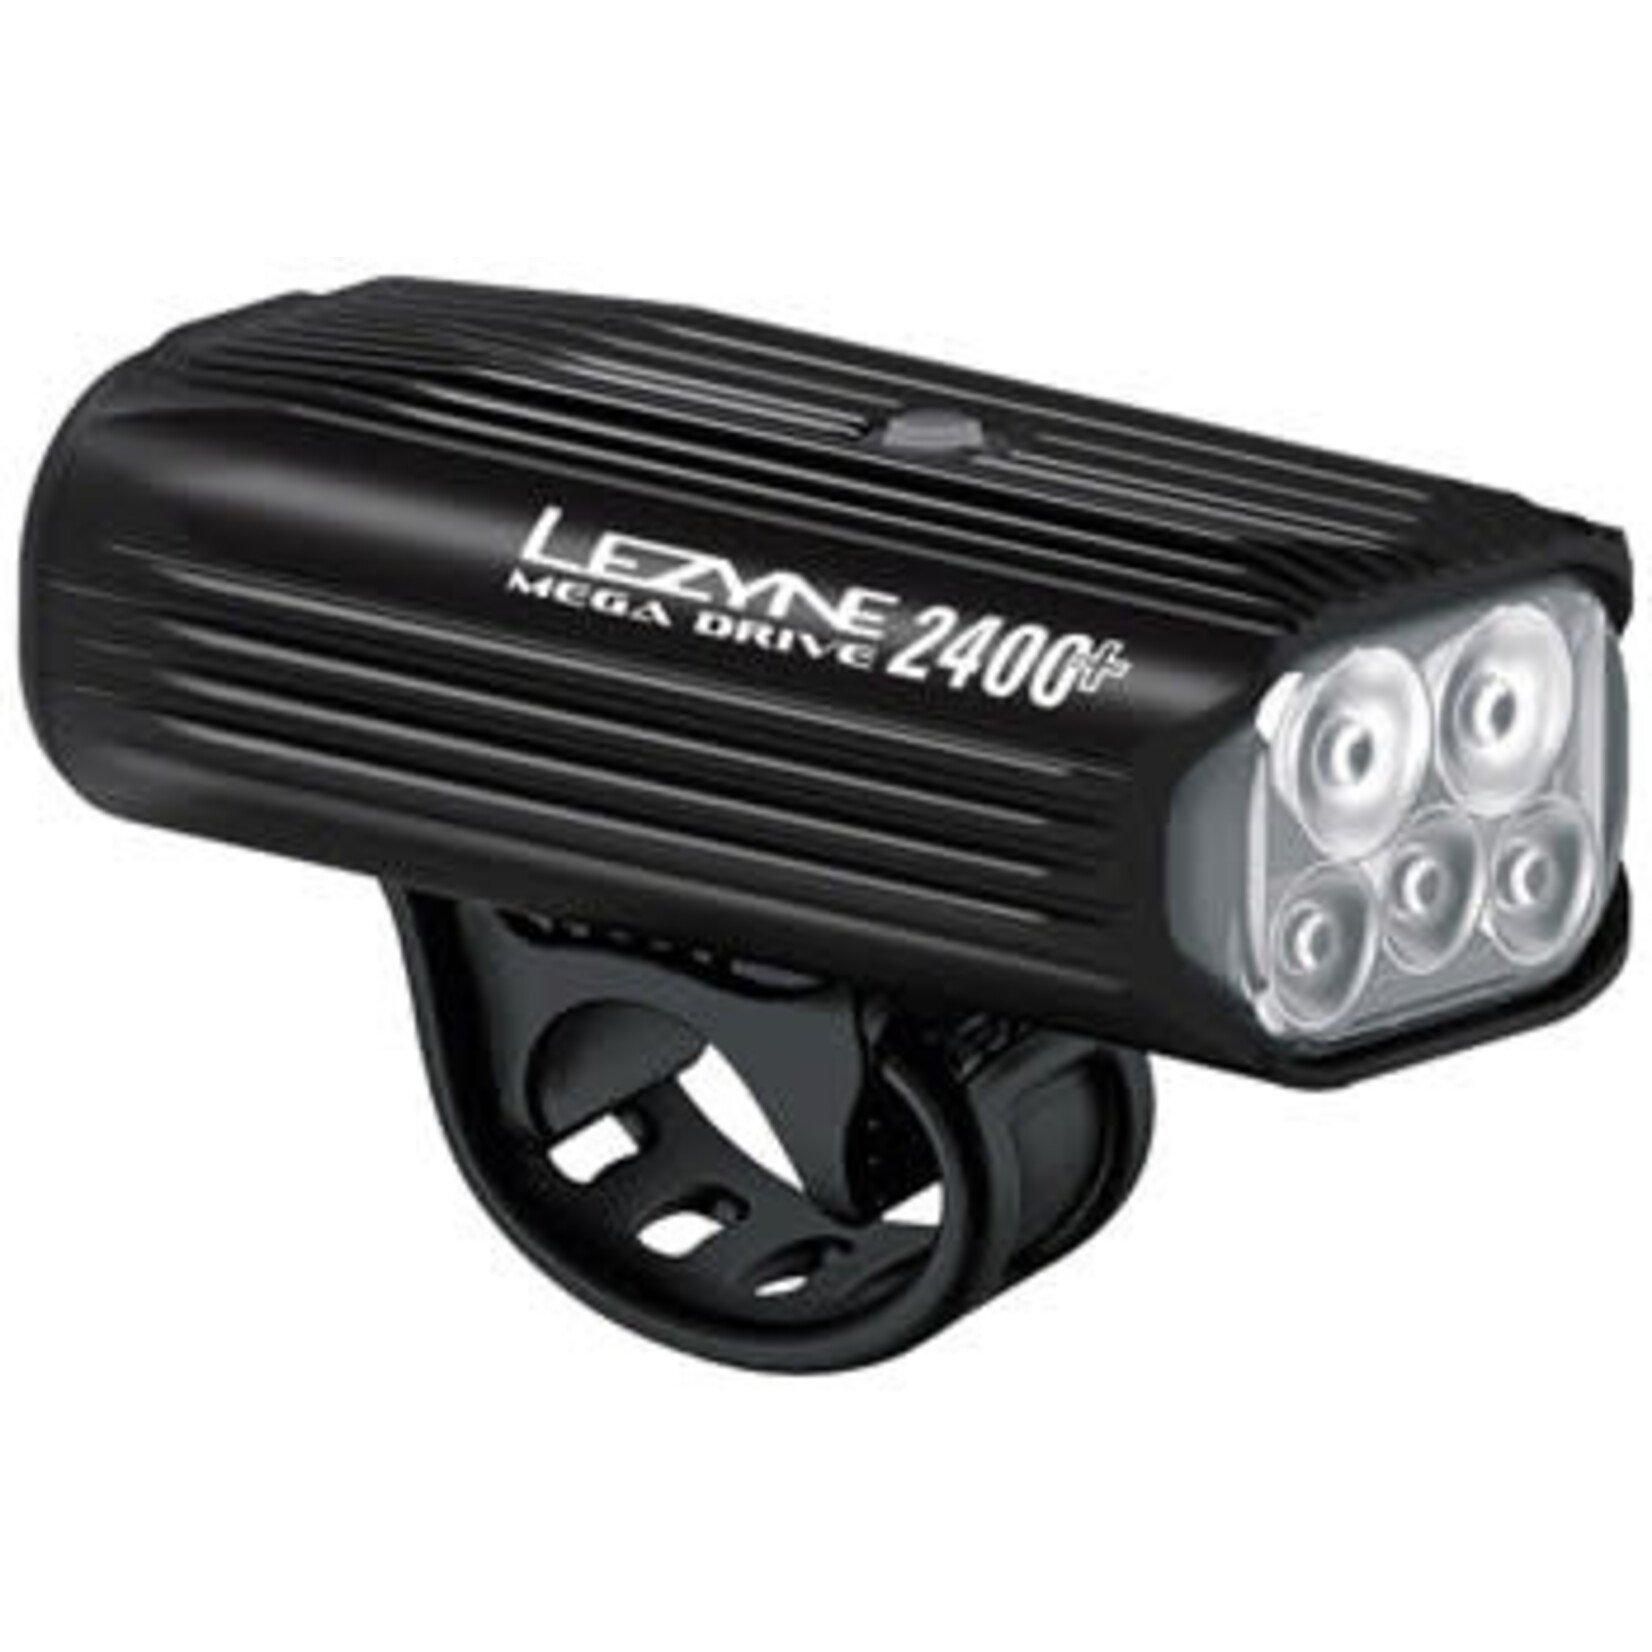 LEZYNE Lezyne Mega drive 2400+headlight-2400 Lumens